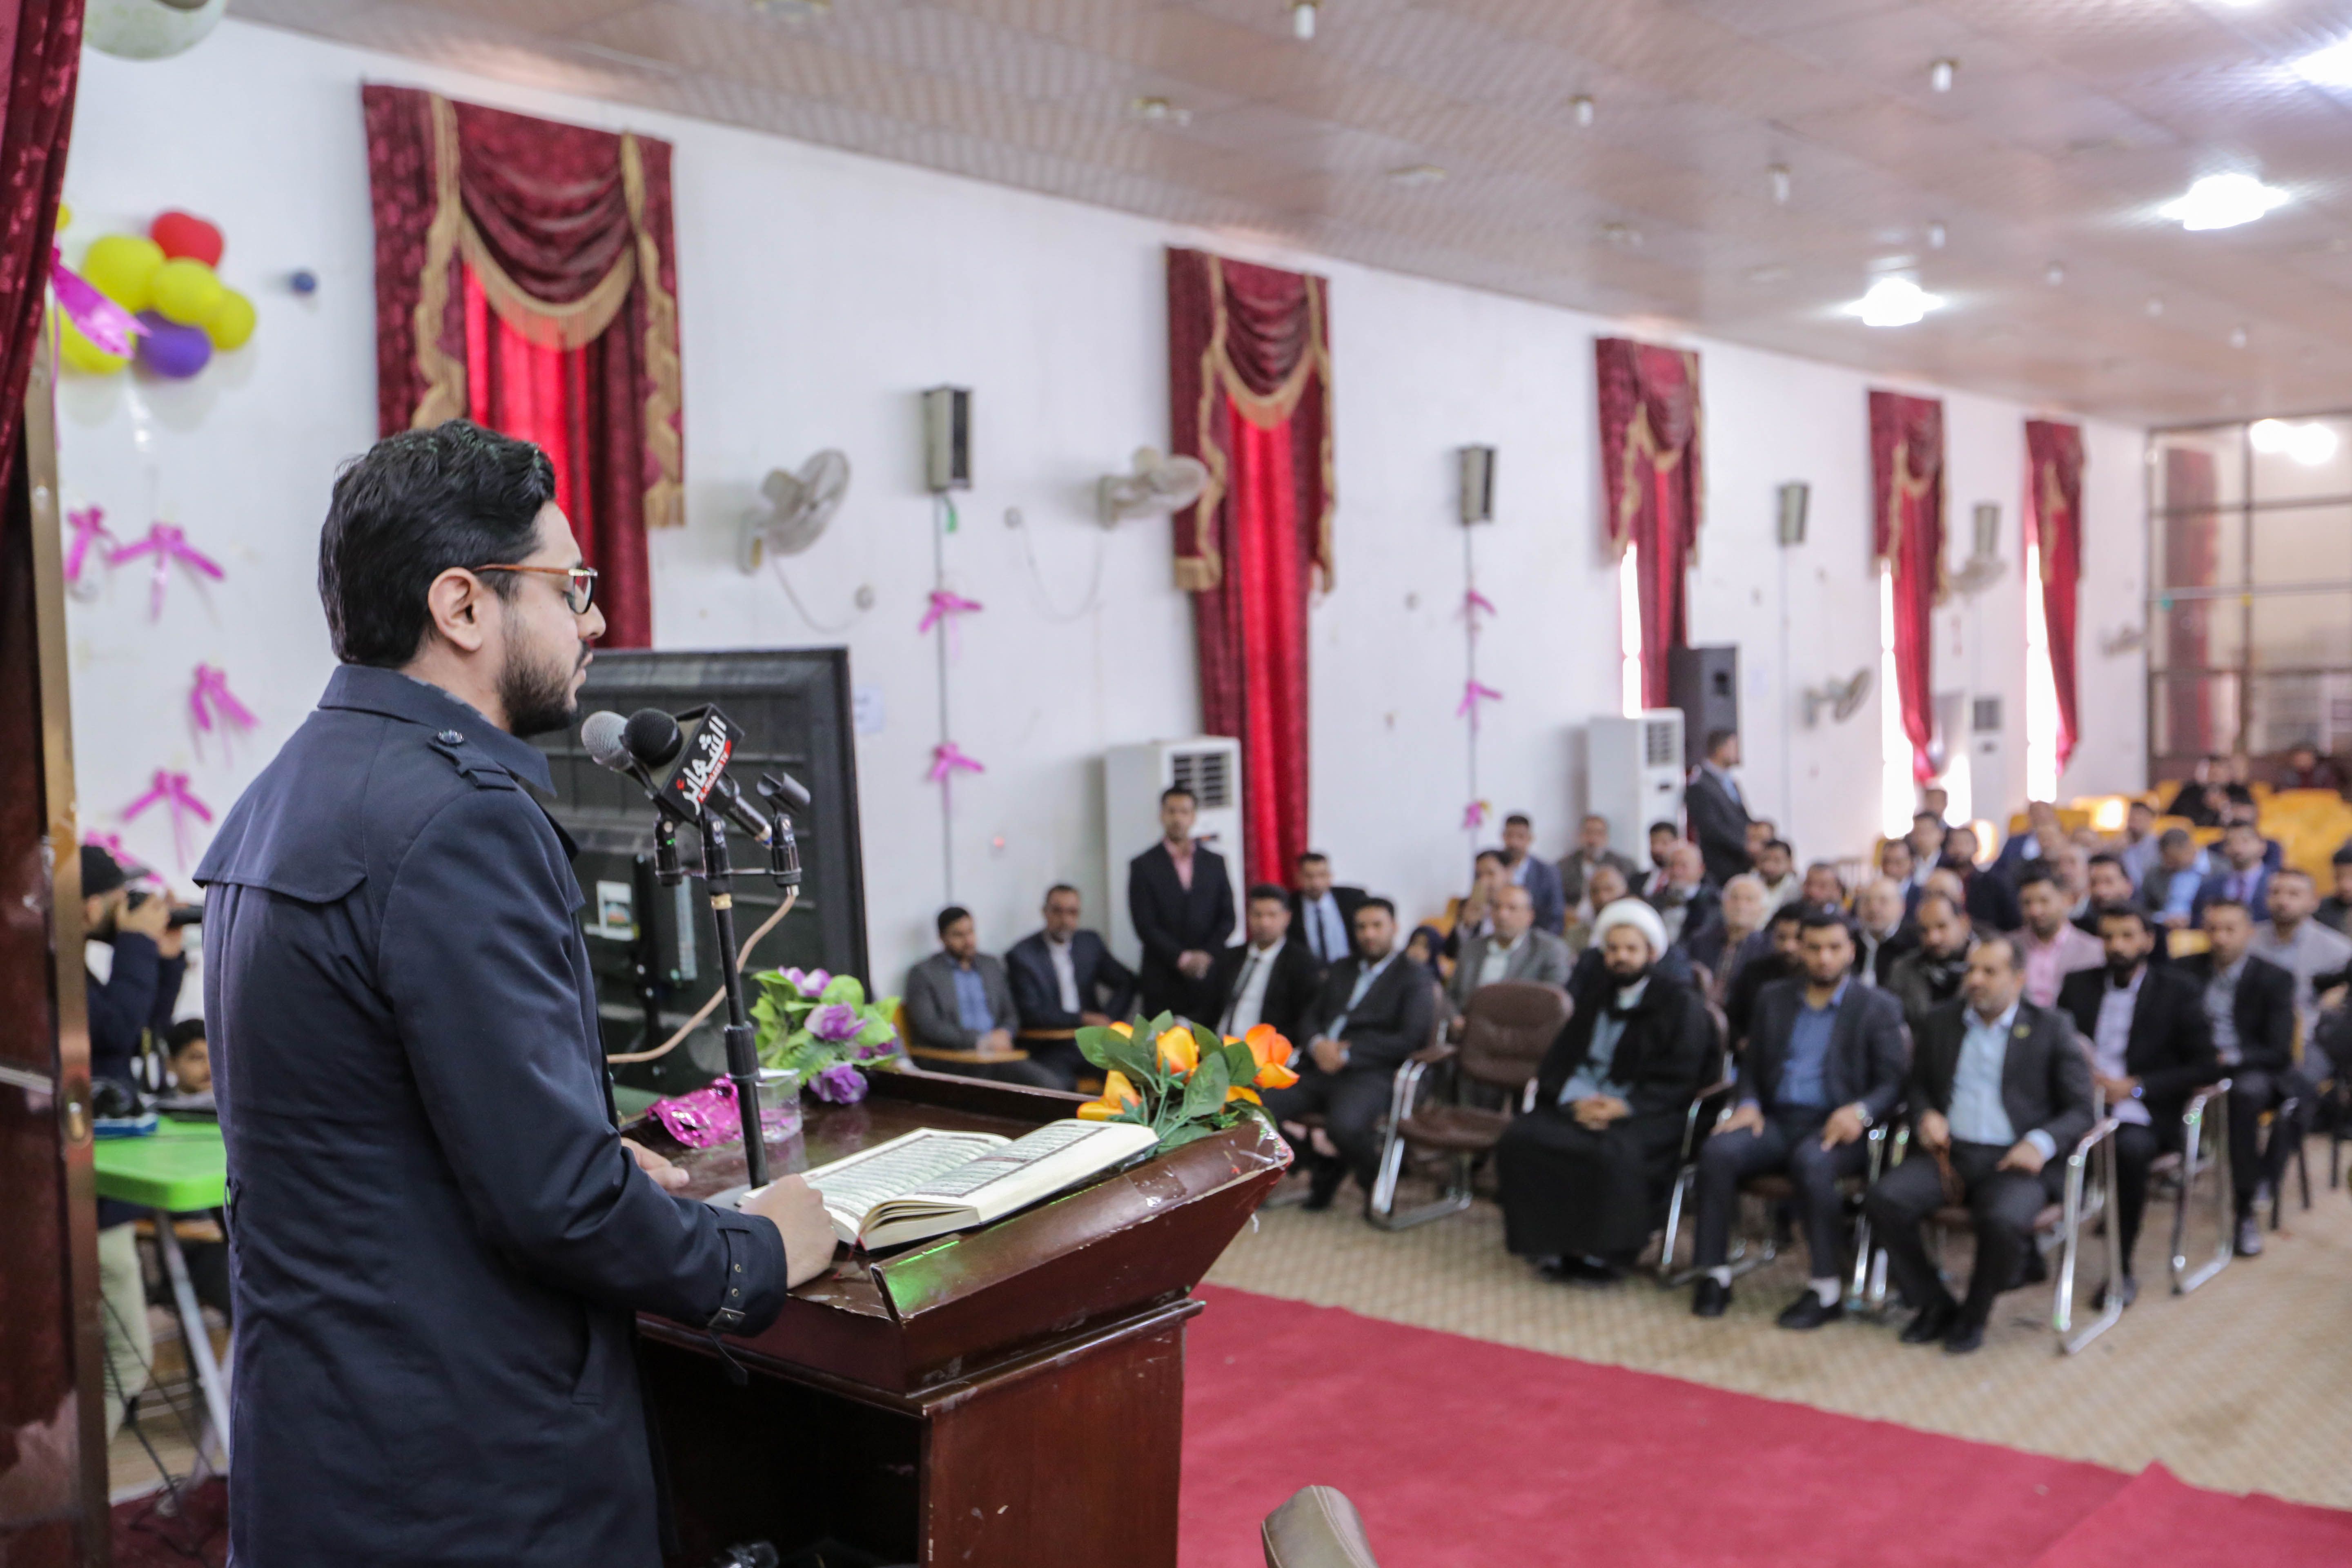 معهد القرآن الكريم فرع بابل يقيم مهرجان ختام مشاريعه القرآنية لعام 2018